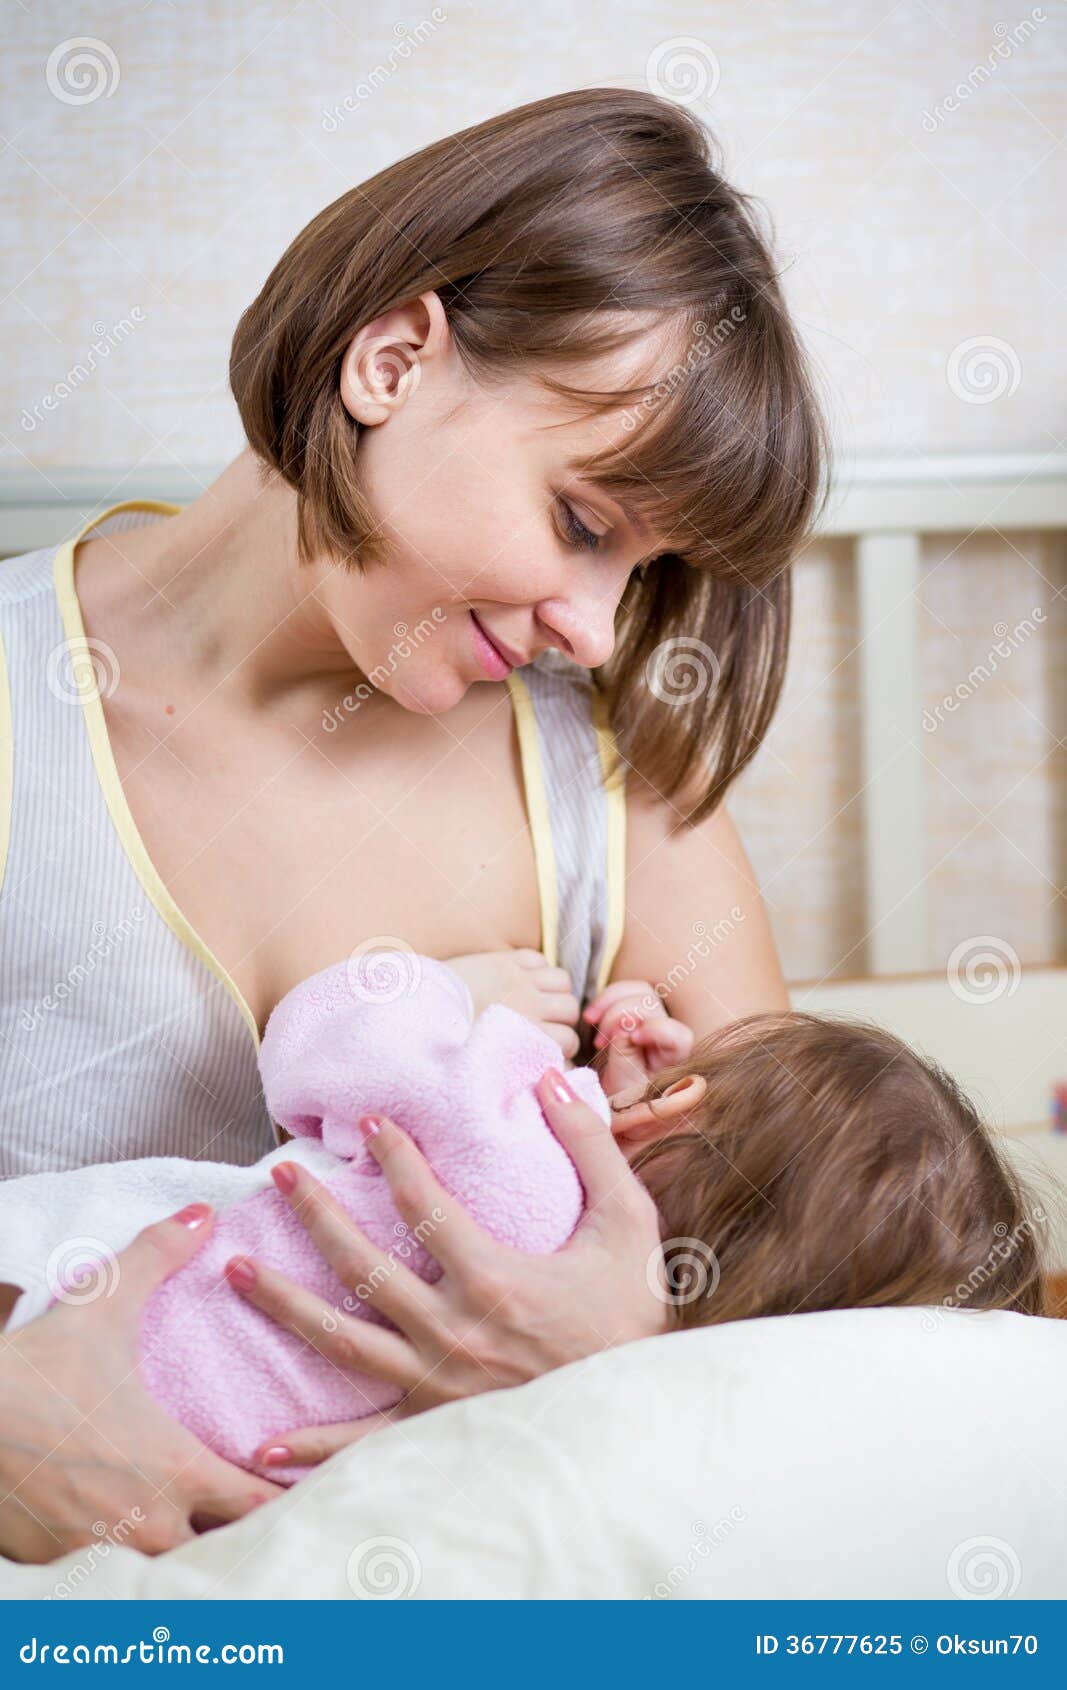 кормить ребенка грудью порно фото 82